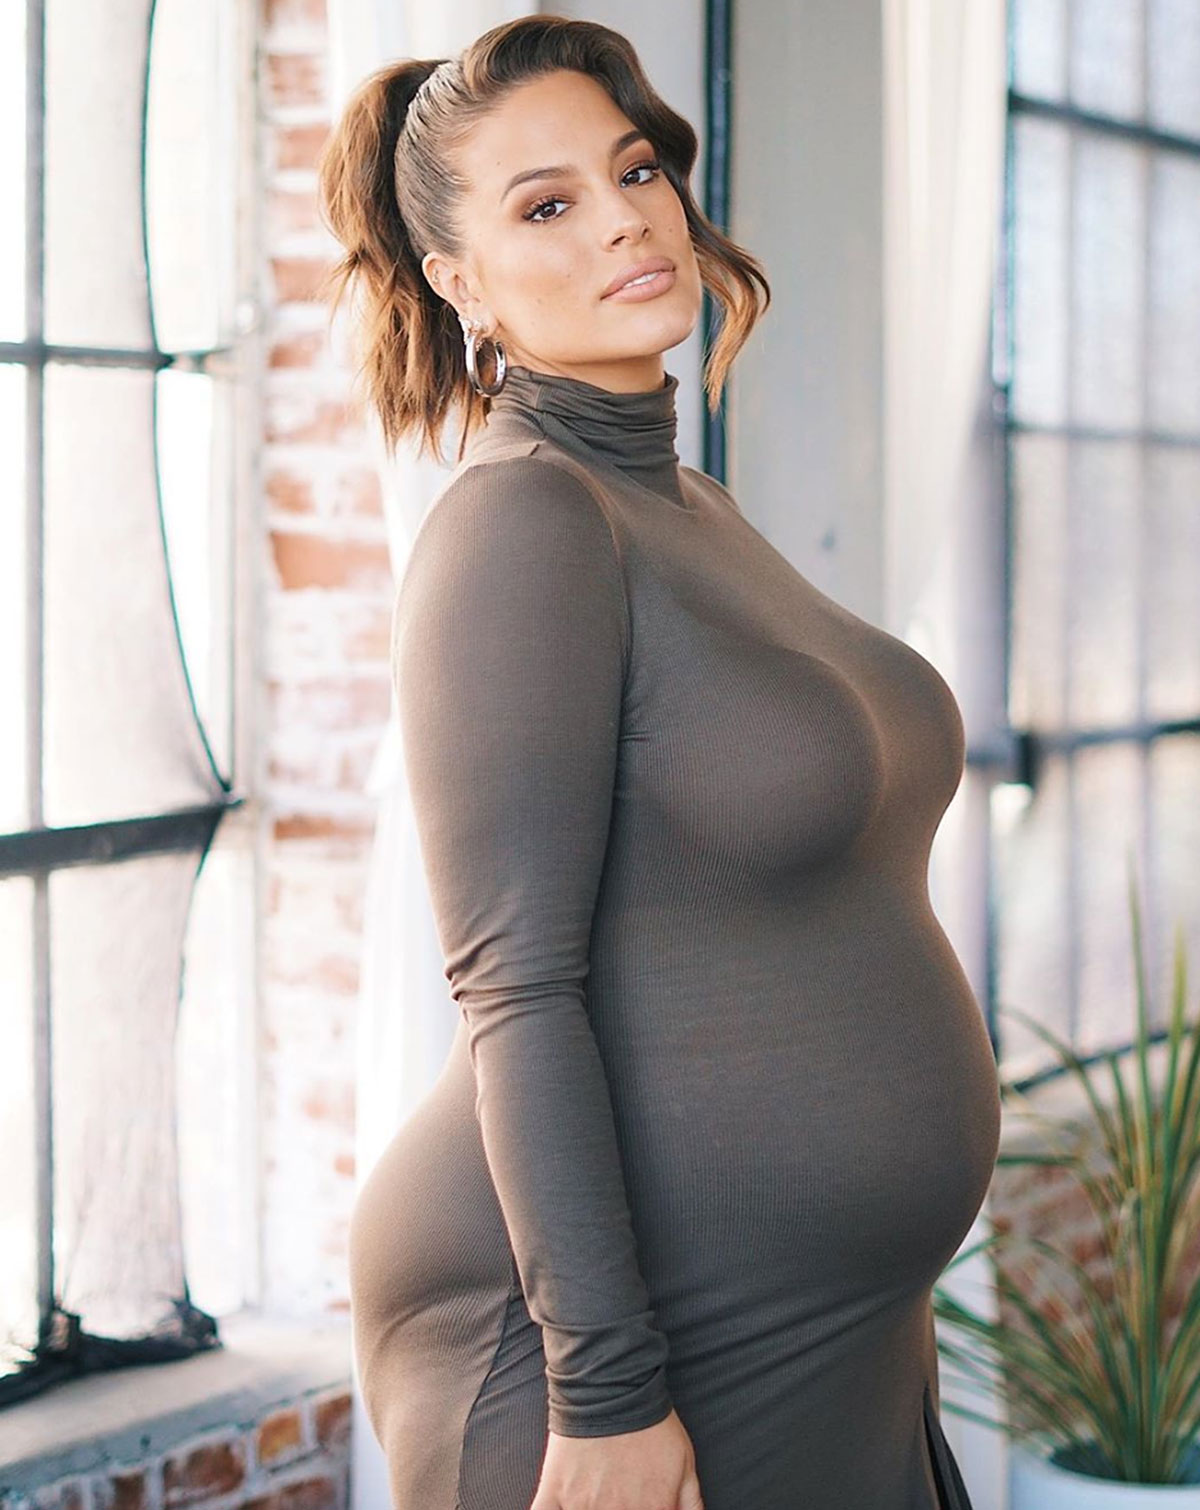 Селфи беременной с огромными дойками фото